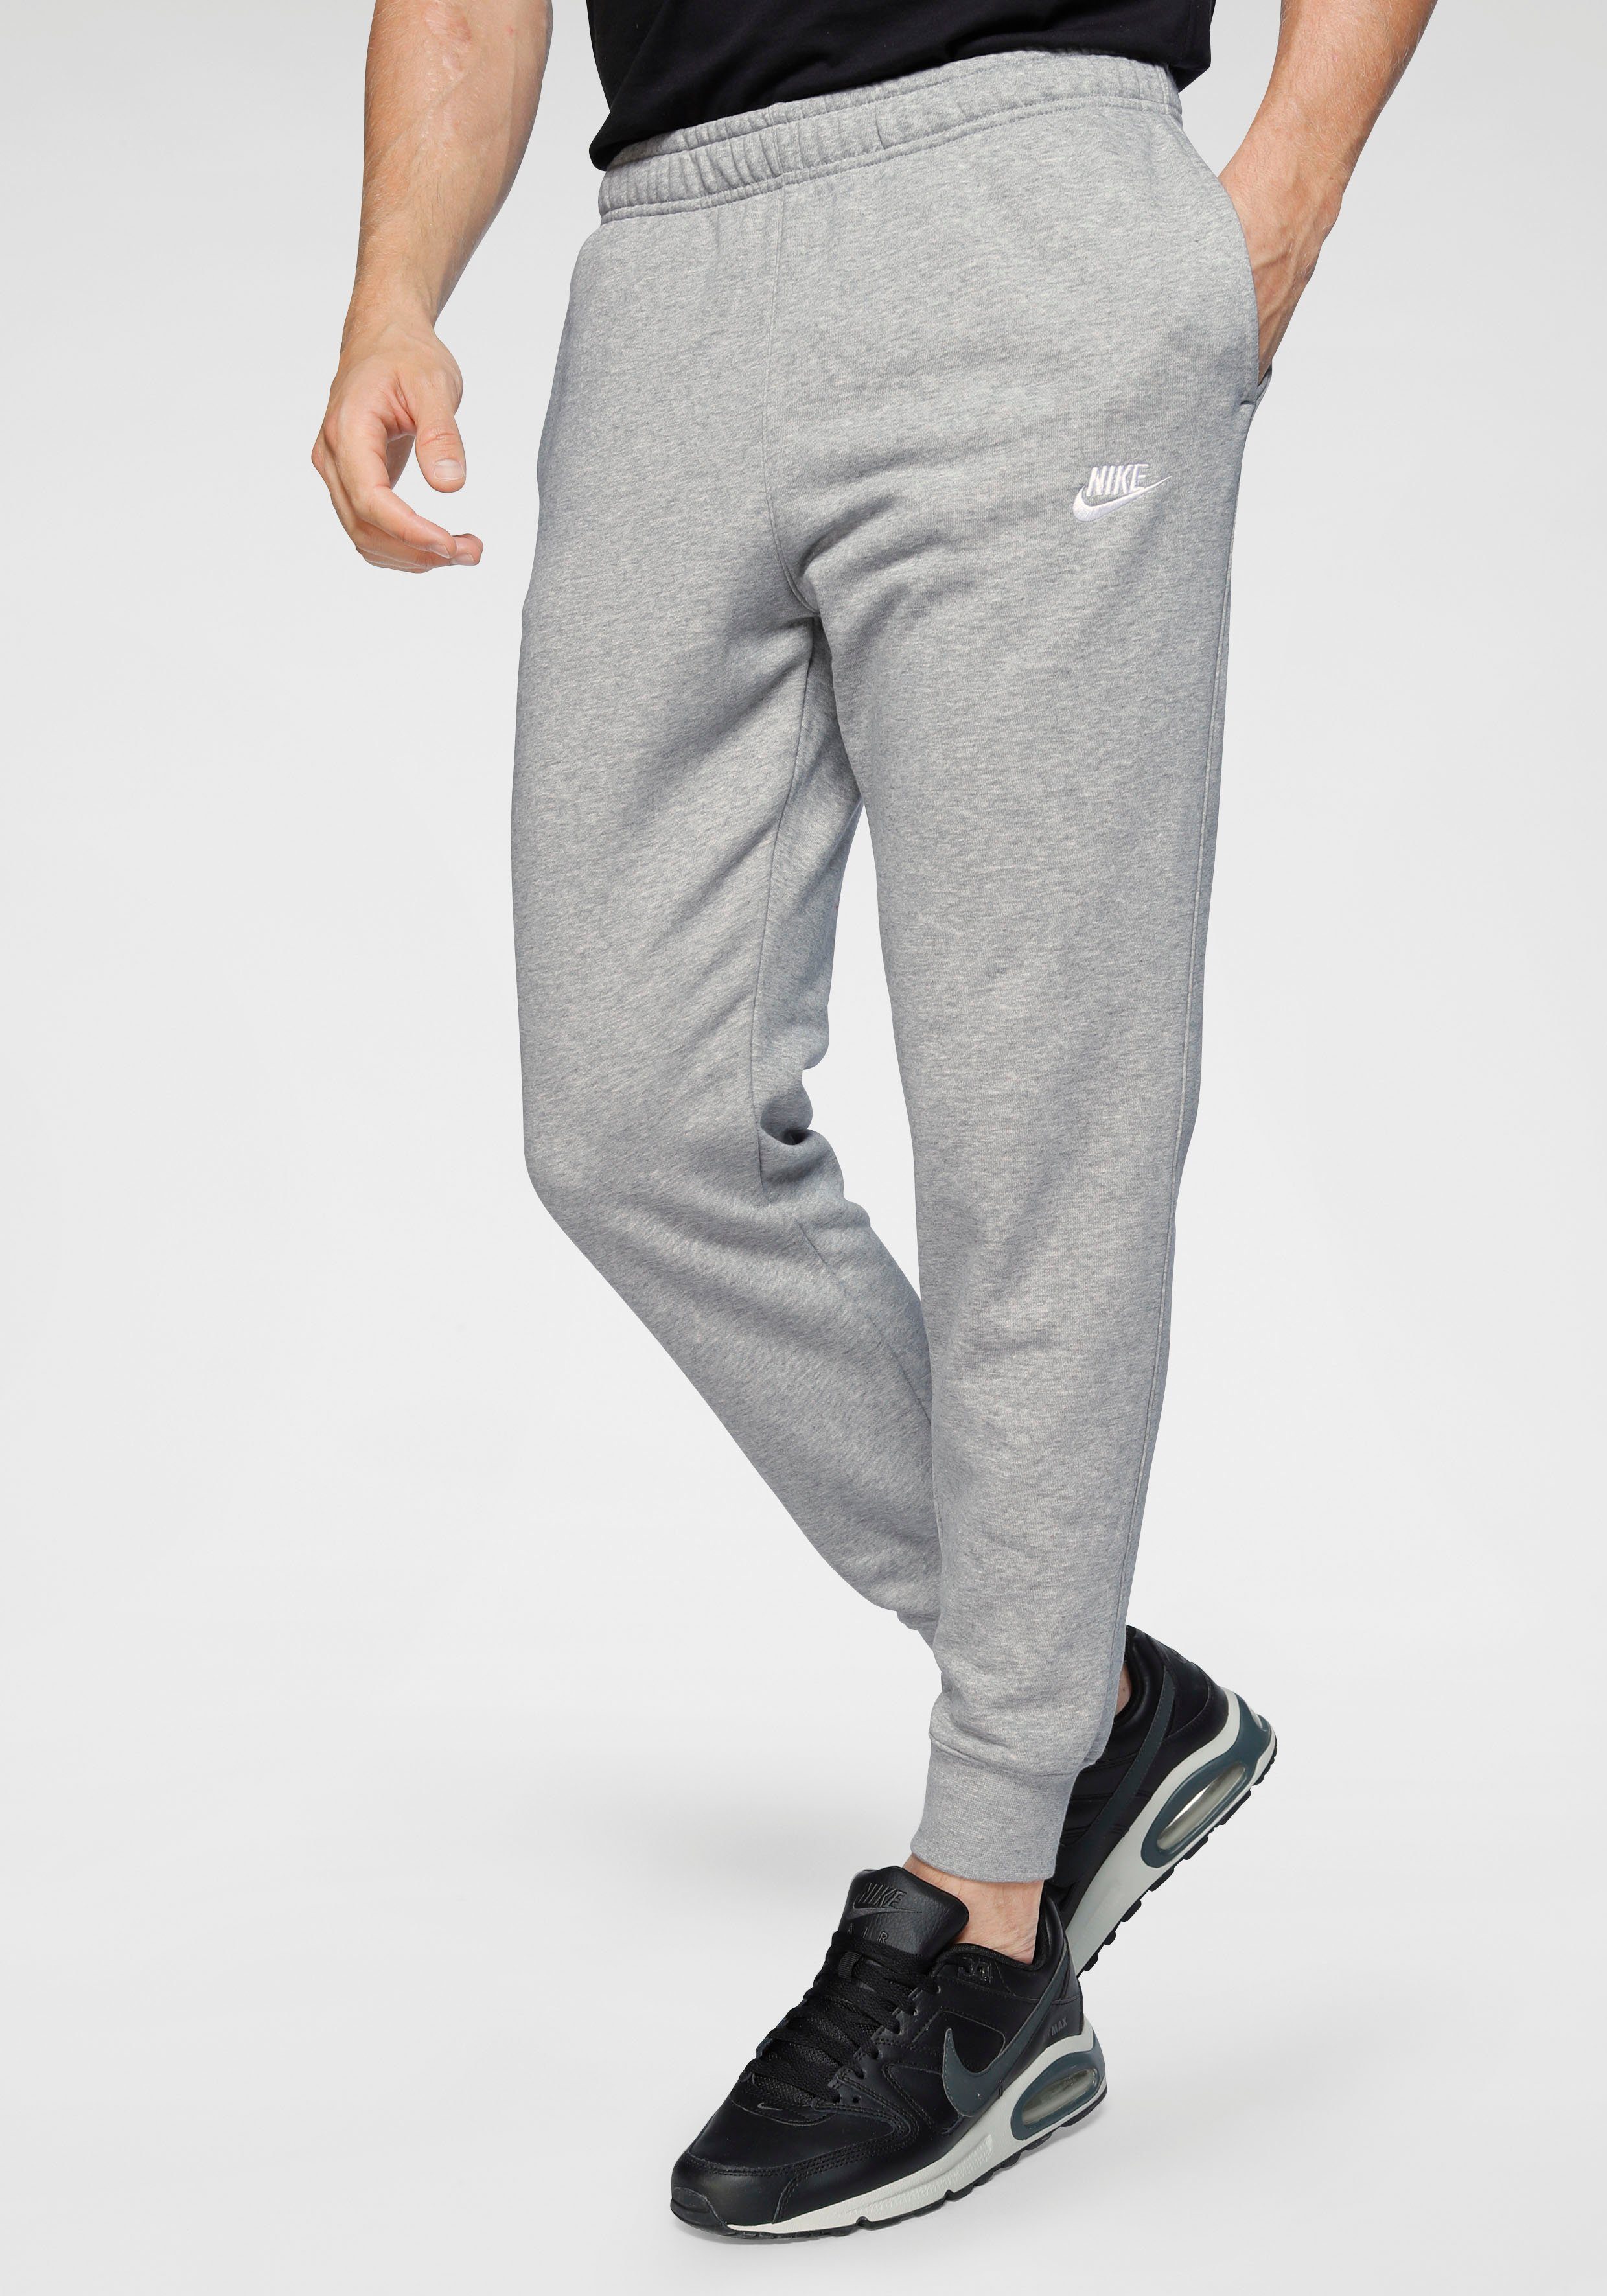 Graue Nike Jogginghosen für online kaufen | OTTO